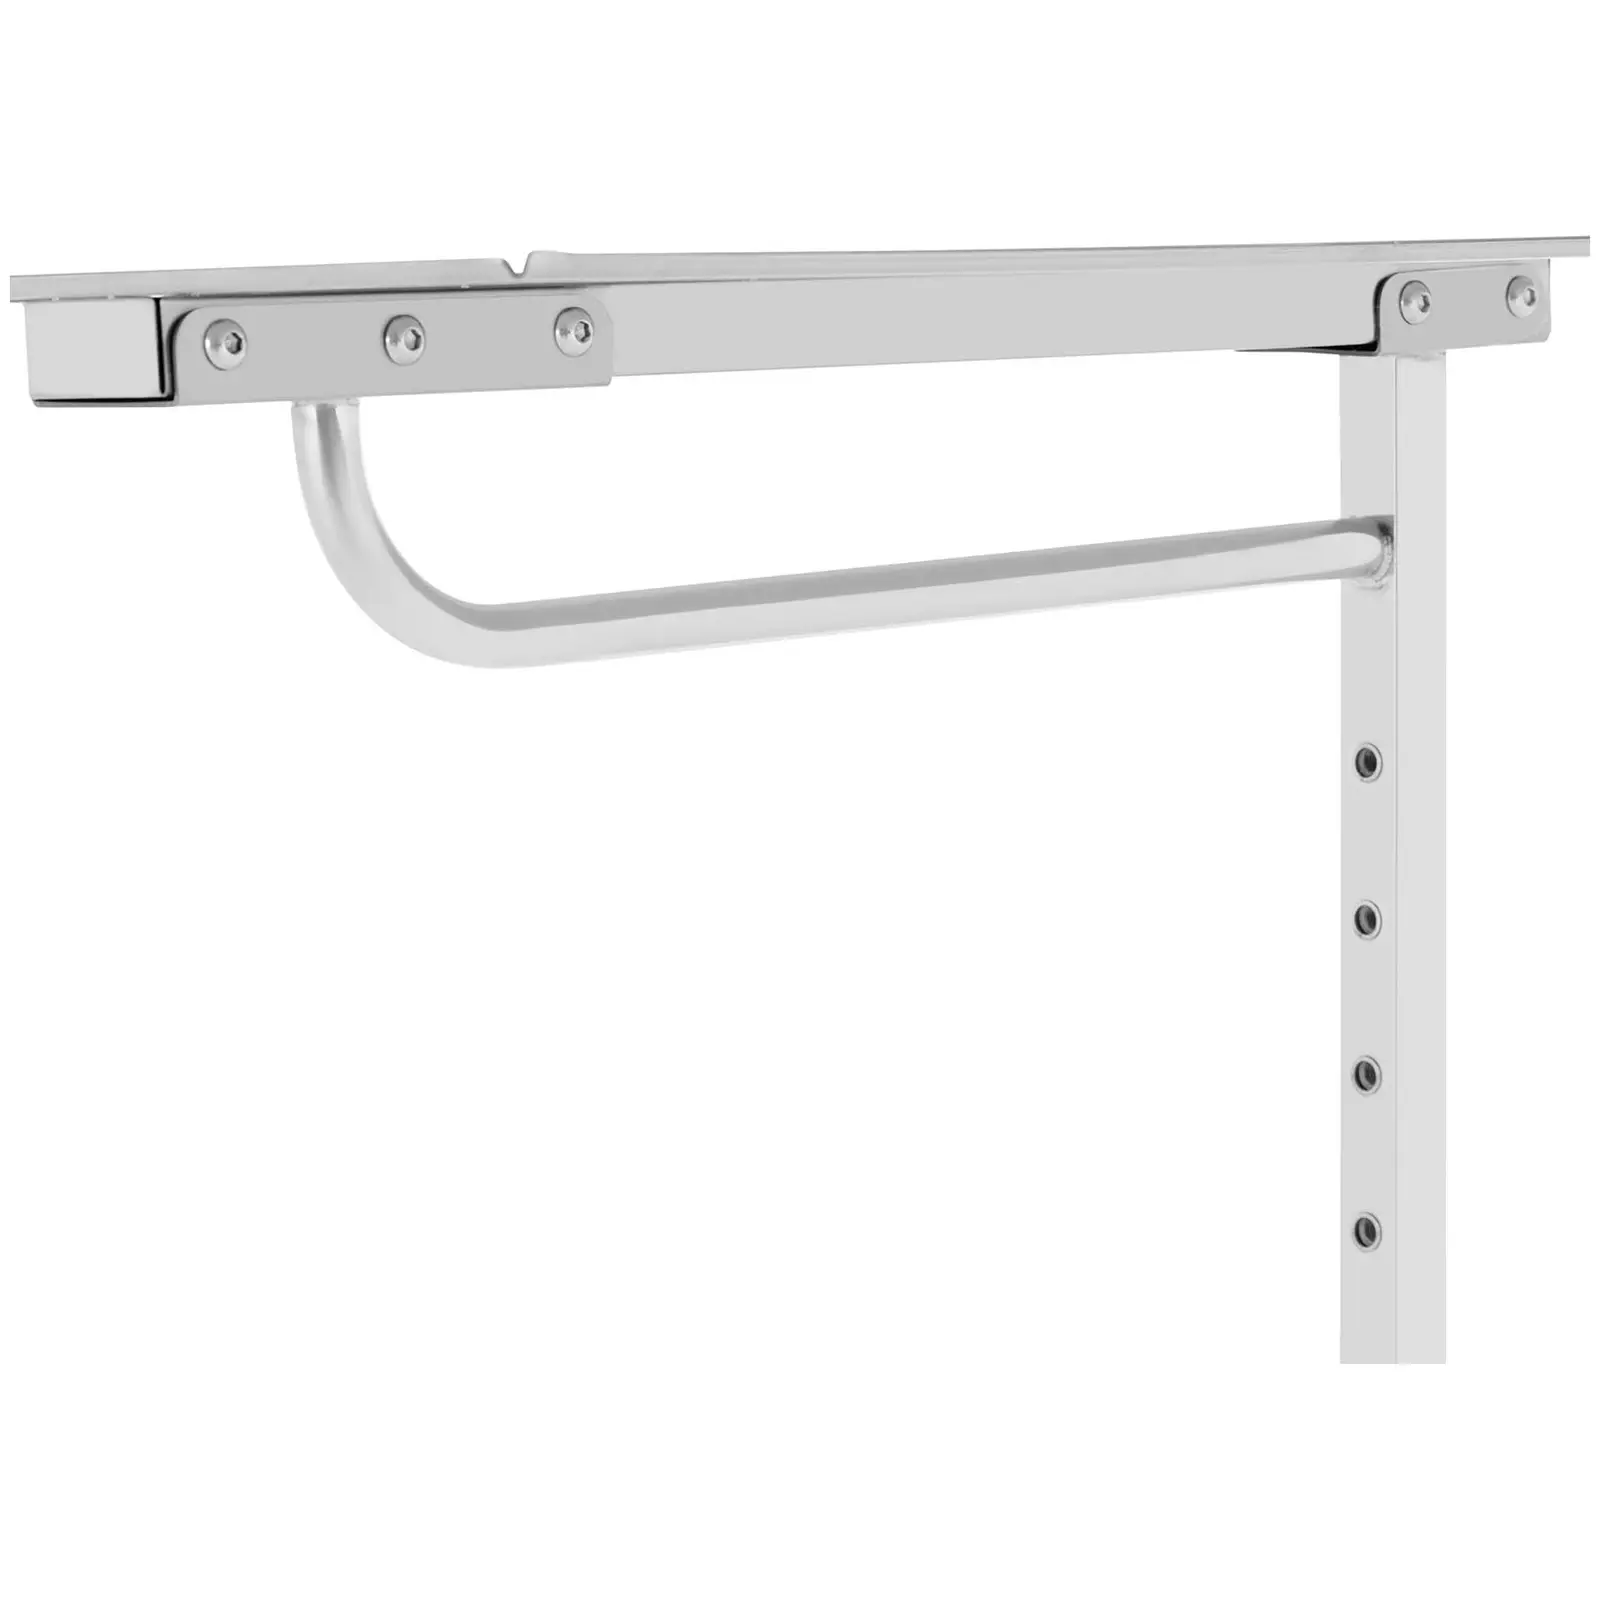 Mesa para instrumental - diseño con lateral abierto - 60 x 40 mm - regulable en altura - acero inoxidable / goma